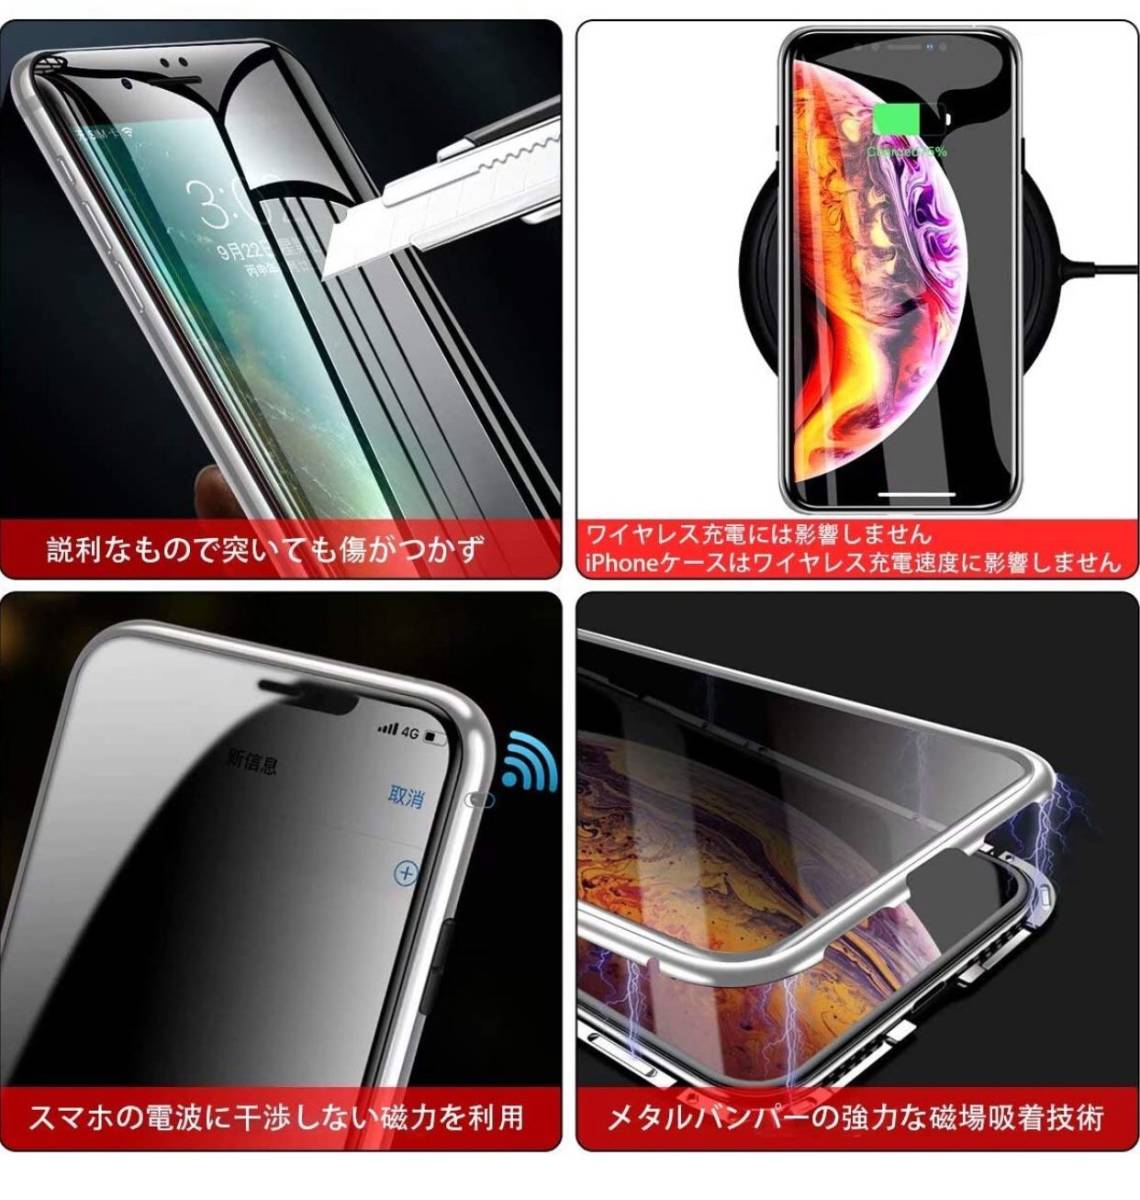 Iphone Xs 両面ガラス 覗き見防止 360 全面保護 アルミバンパー マグネット 耐衝撃 Iphone7 8 Se2 Se3 X Xr 11 12 Pro Max ケース カバー 1周年記念イベントが